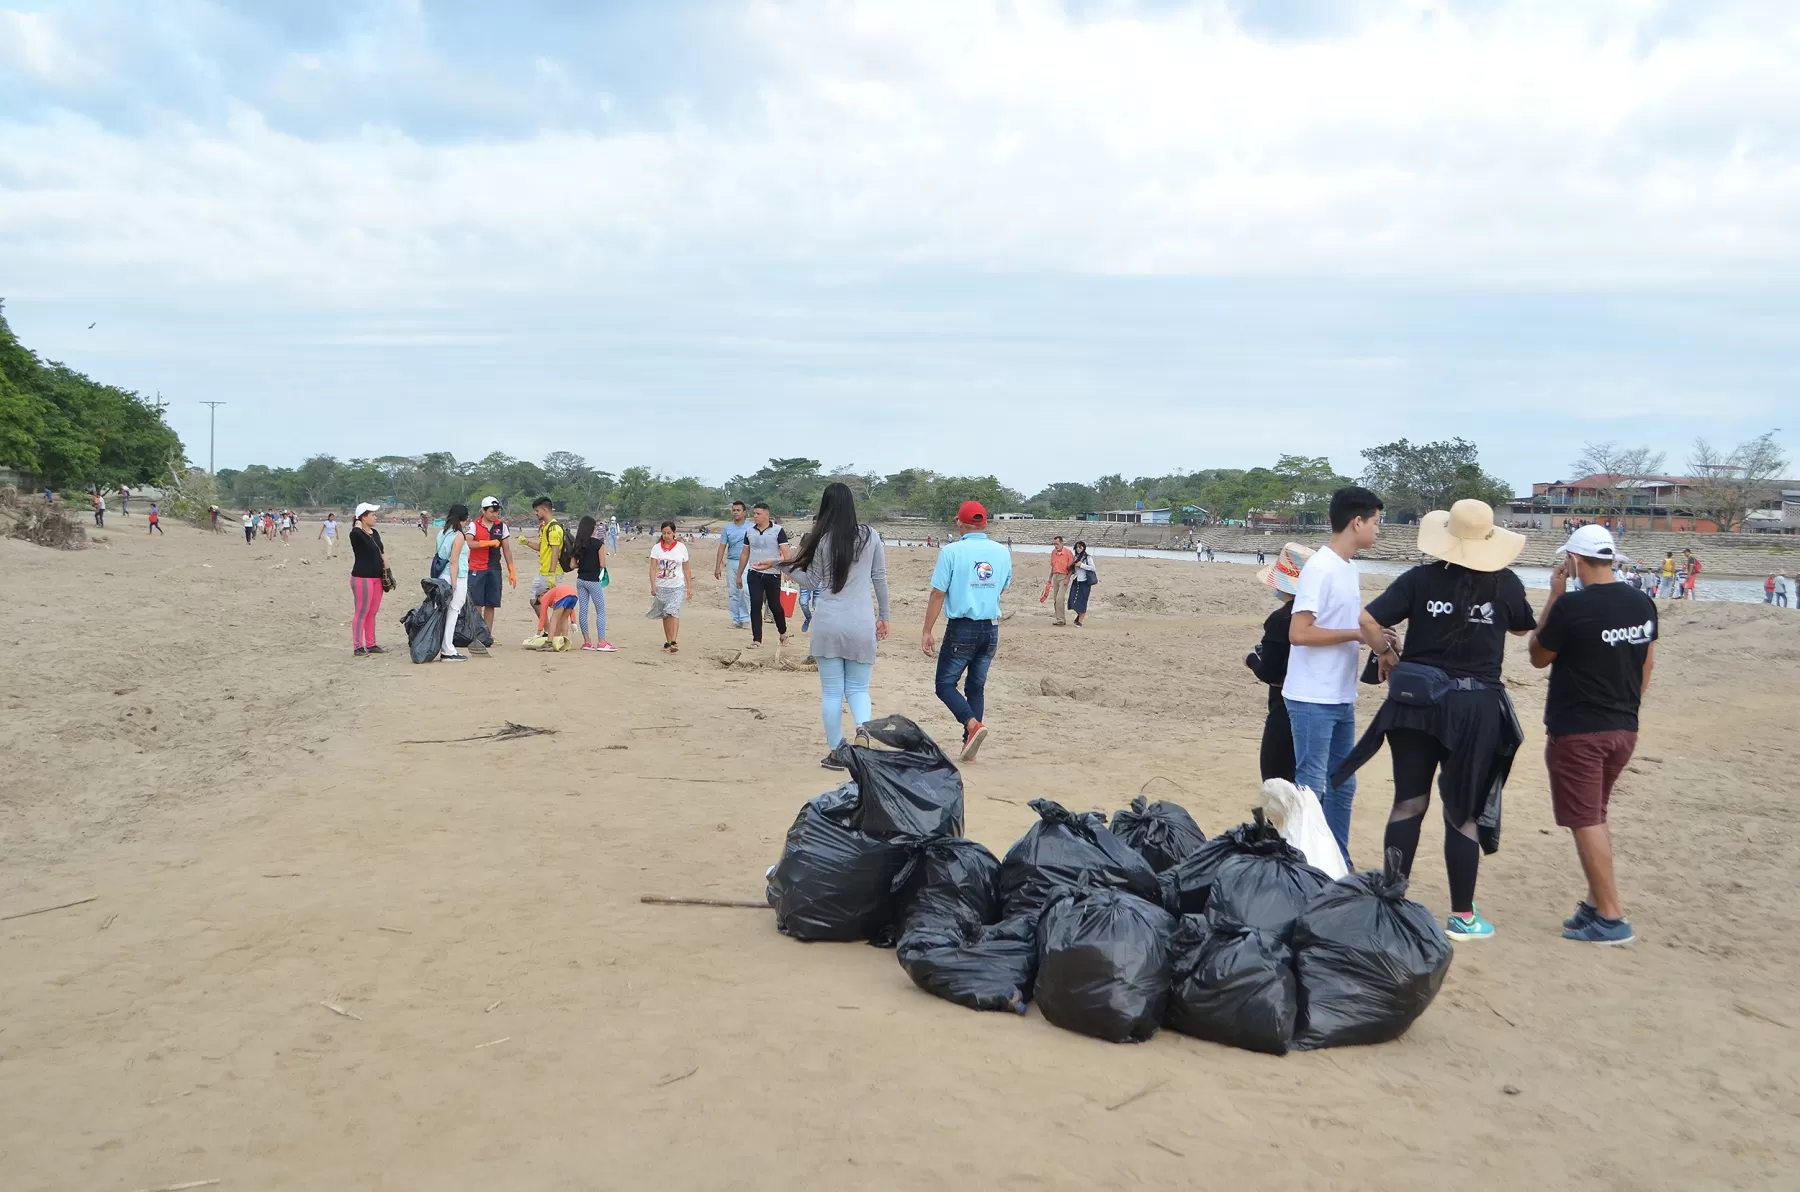 Las playas río Arauca están contaminadas por desechos plásticos, la ciudadanía inicio campaña para recoger la basura y convertirlo en un zona para el turismo.